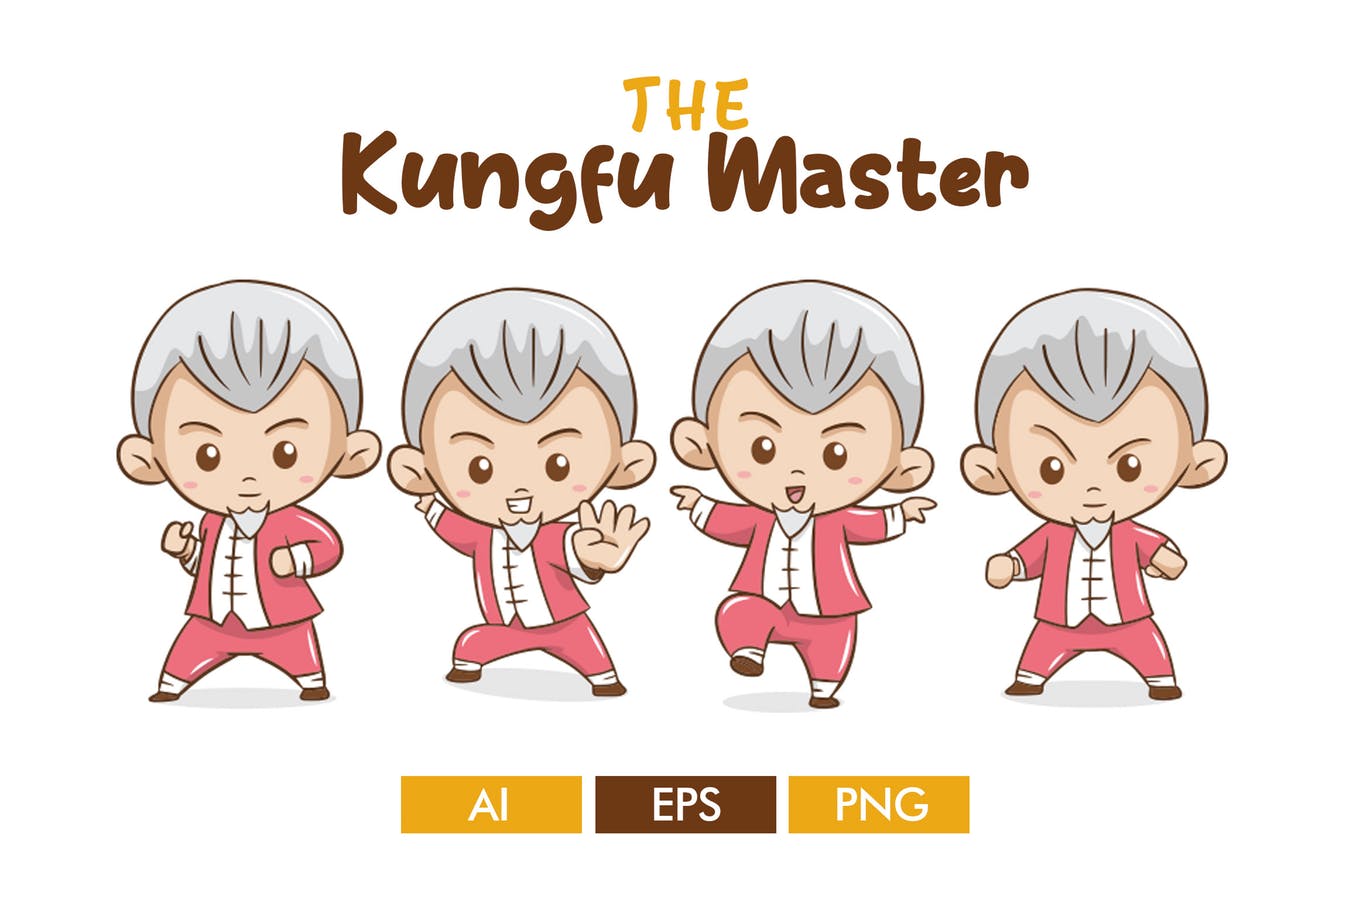 卡通形象功夫大师矢量蚂蚁素材精选设计素材 The Kungfu Master插图